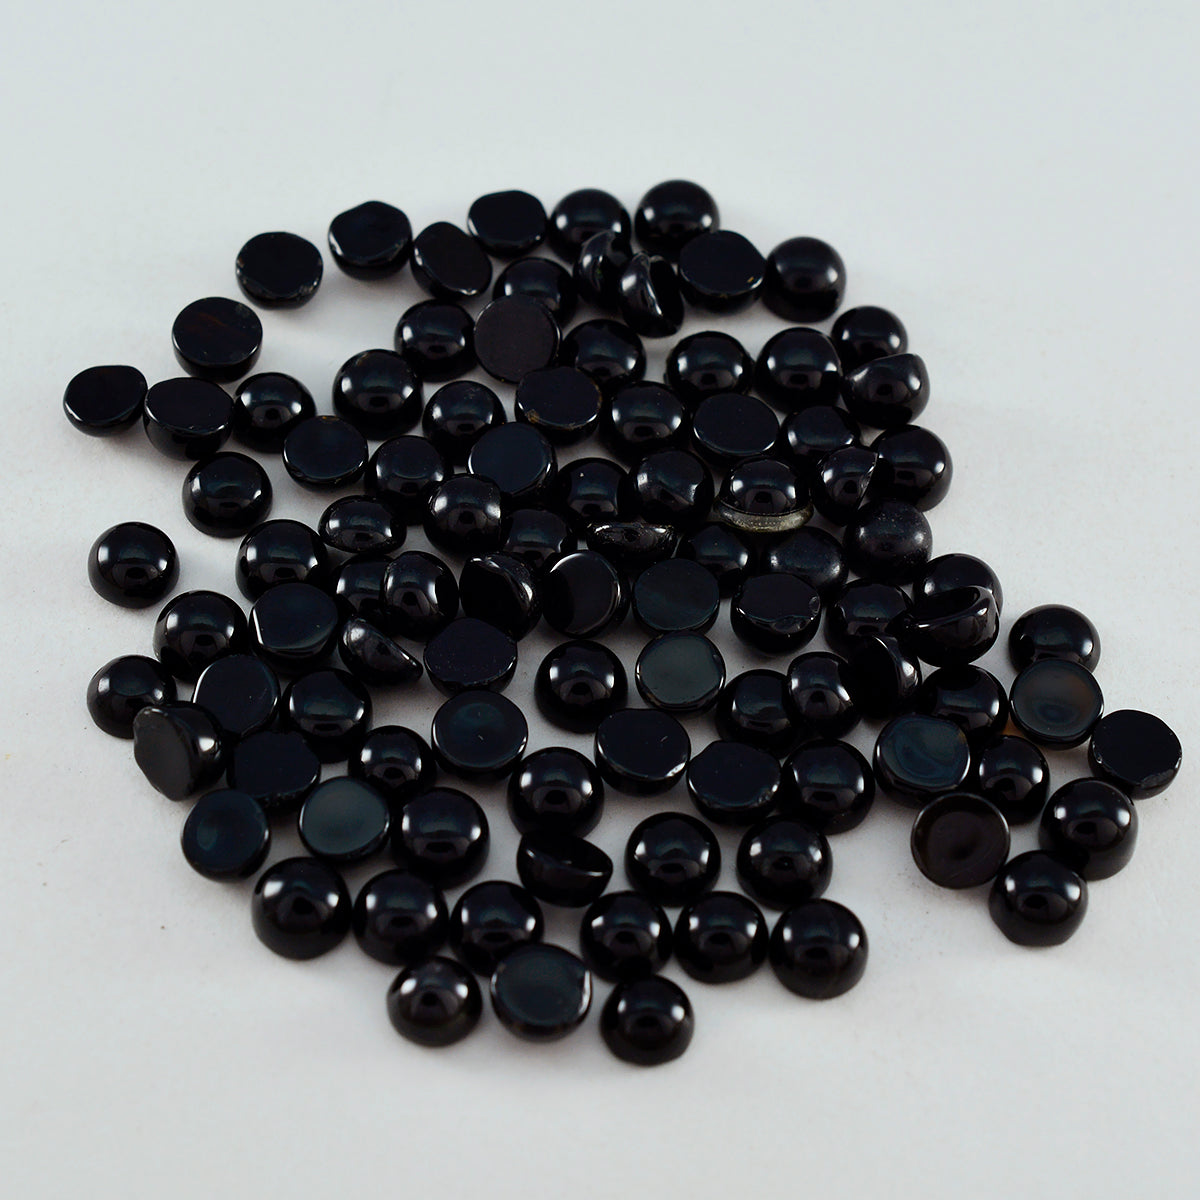 Riyogems 1 pieza cabujón de ónix negro 4x4 mm forma redonda gemas sueltas de calidad A+